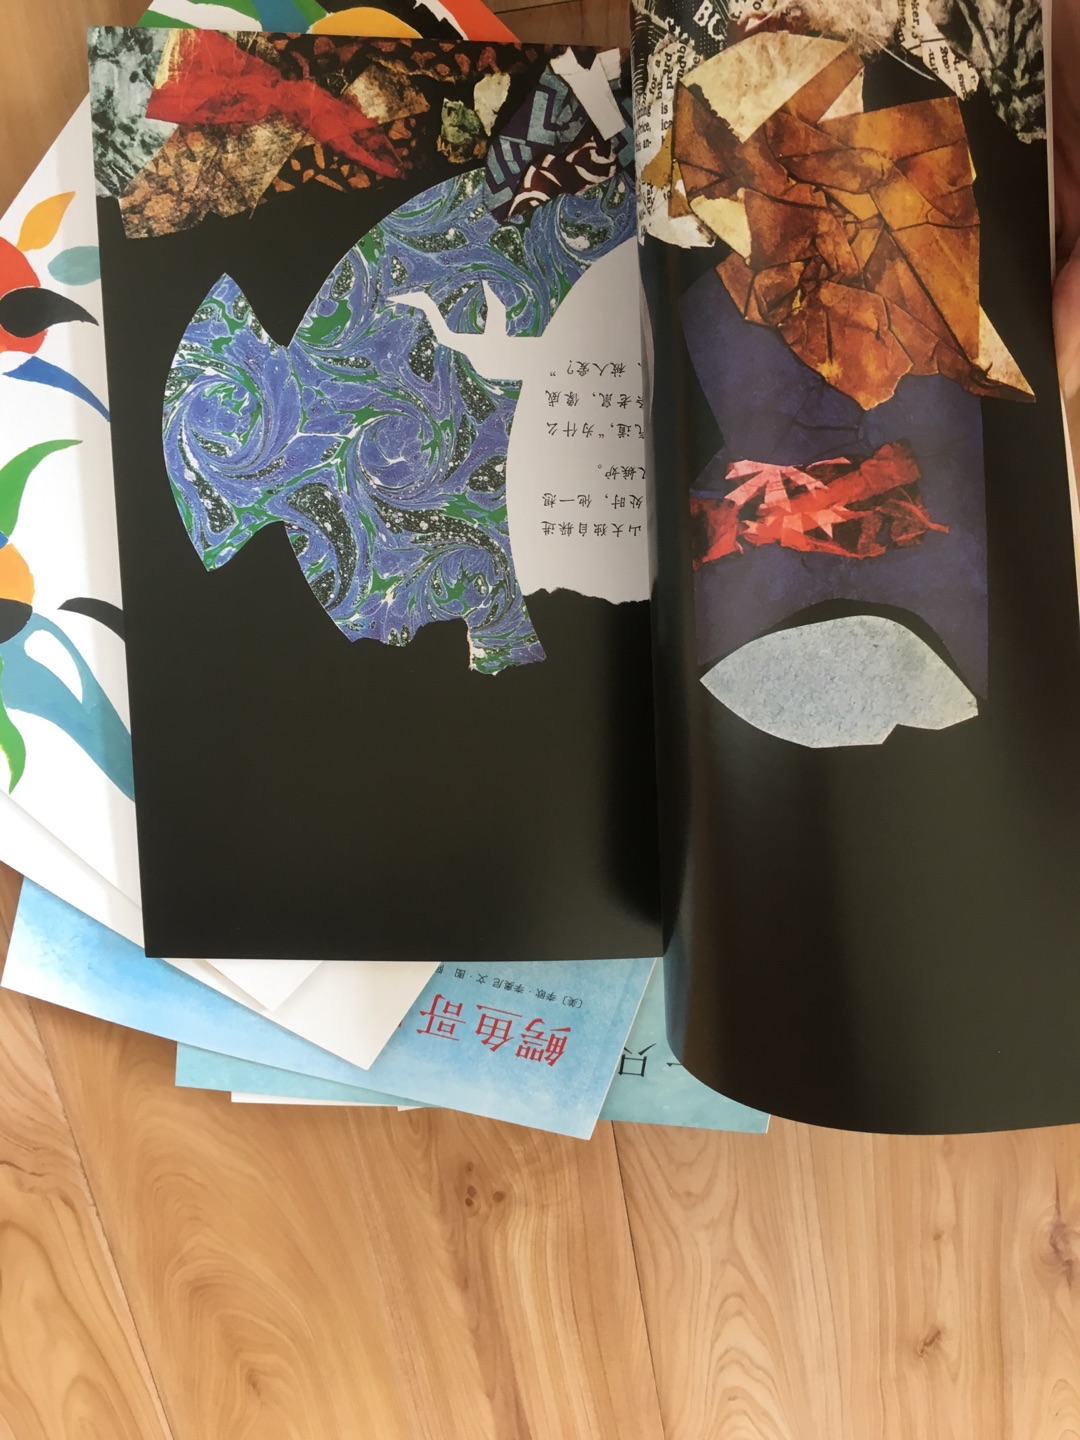 李奥尼的经典作品集，一套一共是14本，平装性价比比较高，买过小黑鱼精装版，印刷效果一样，孩子大了开始选择一些平装绘本了，毕竟比较好收纳